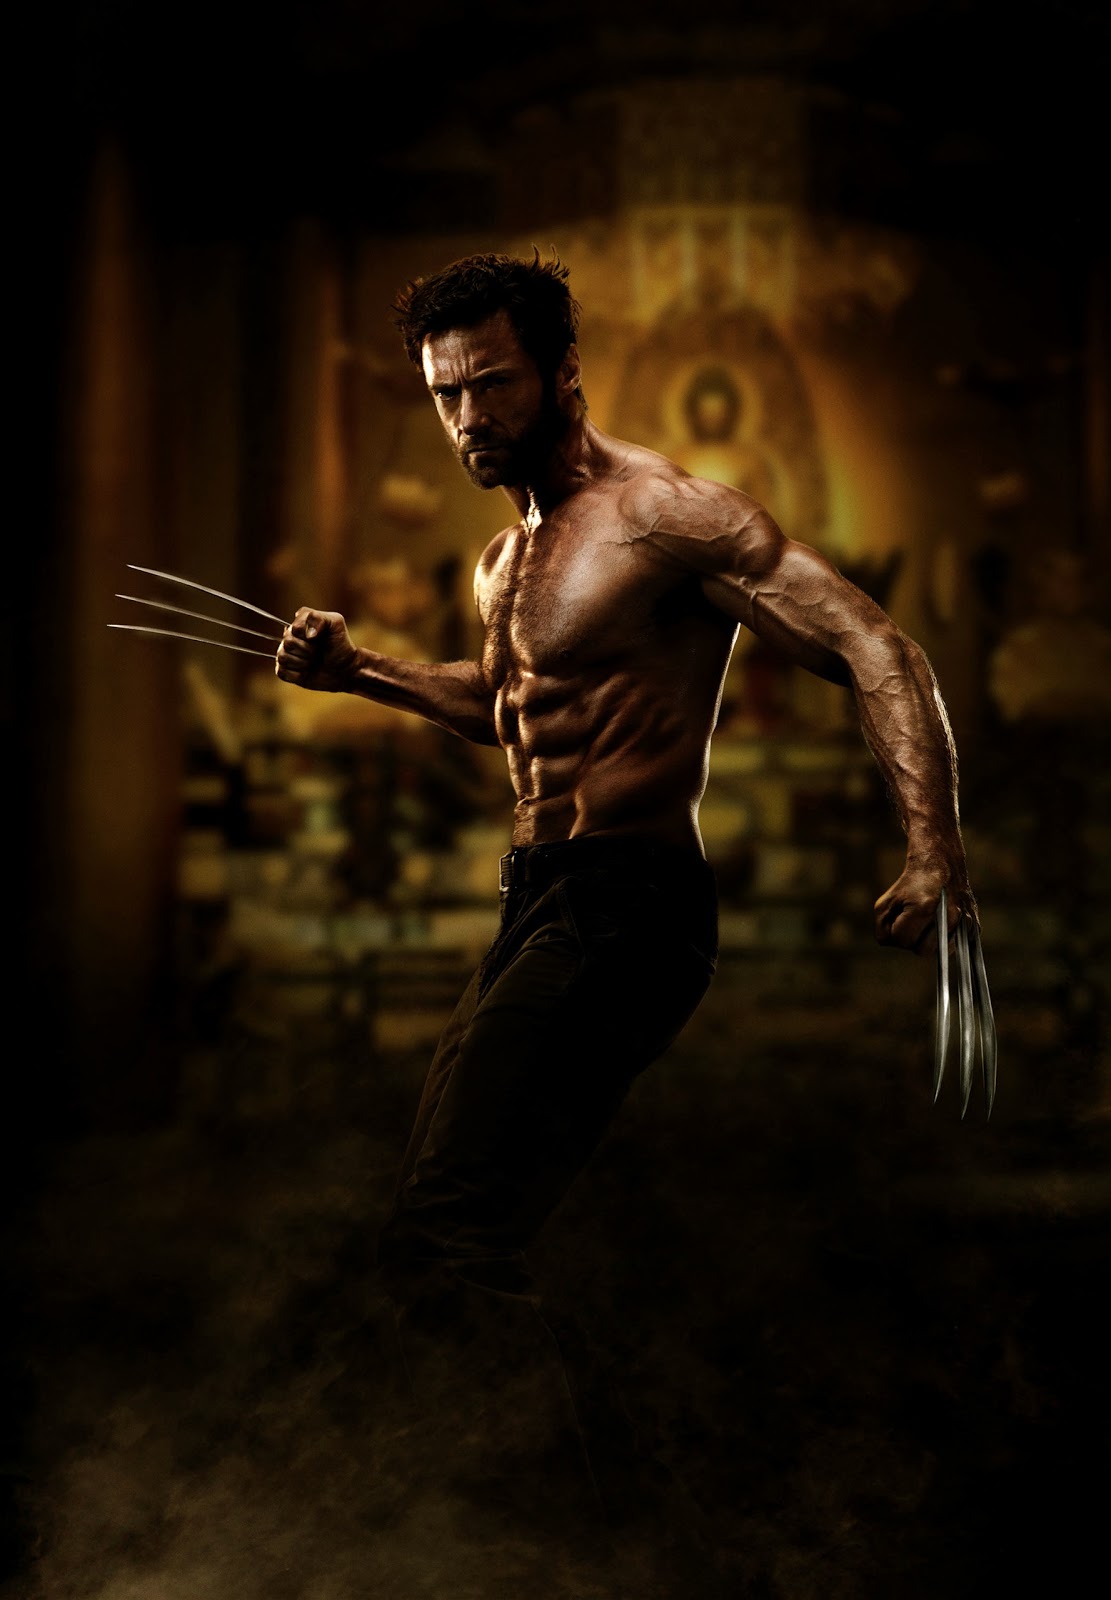 http://1.bp.blogspot.com/-nttNIqt6EUE/UKu4D1_bIrI/AAAAAAAAAF4/-Ygk5r5vsOk/s1600/Hugh-Jackman-The-Wolverine1.jpg